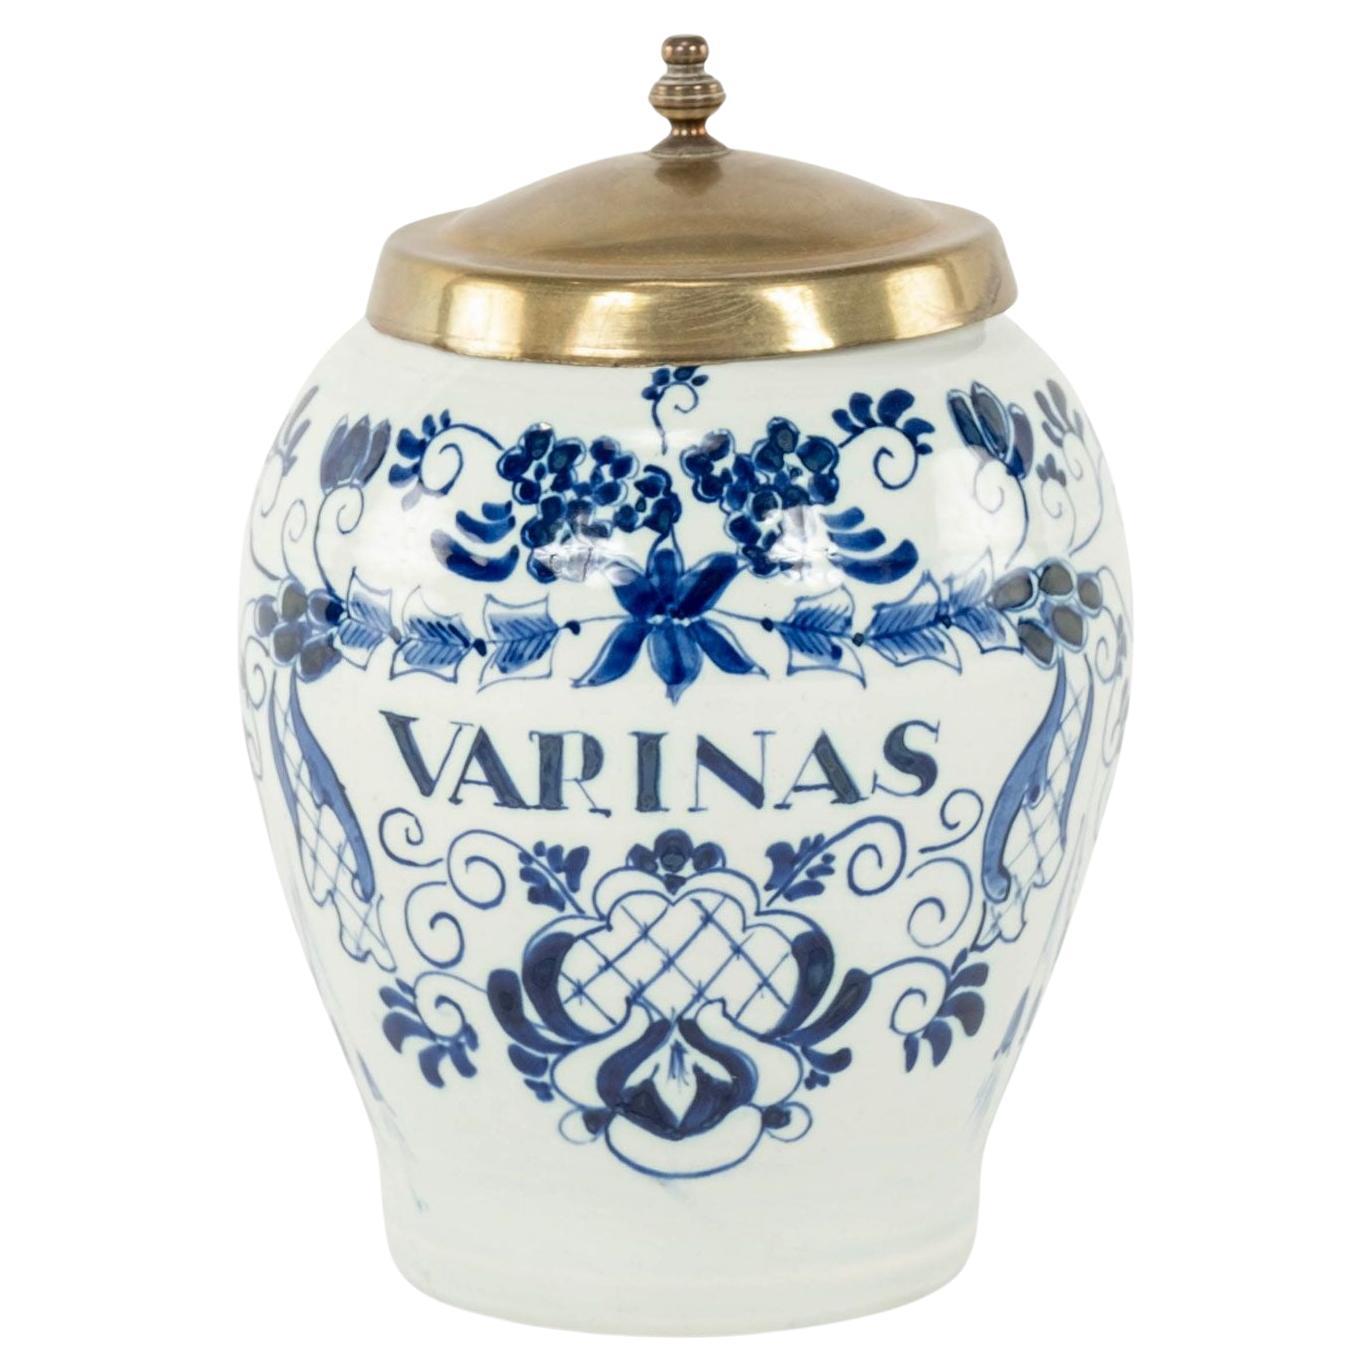 Delft Blau und Weiß "Varinas" Tabakglas